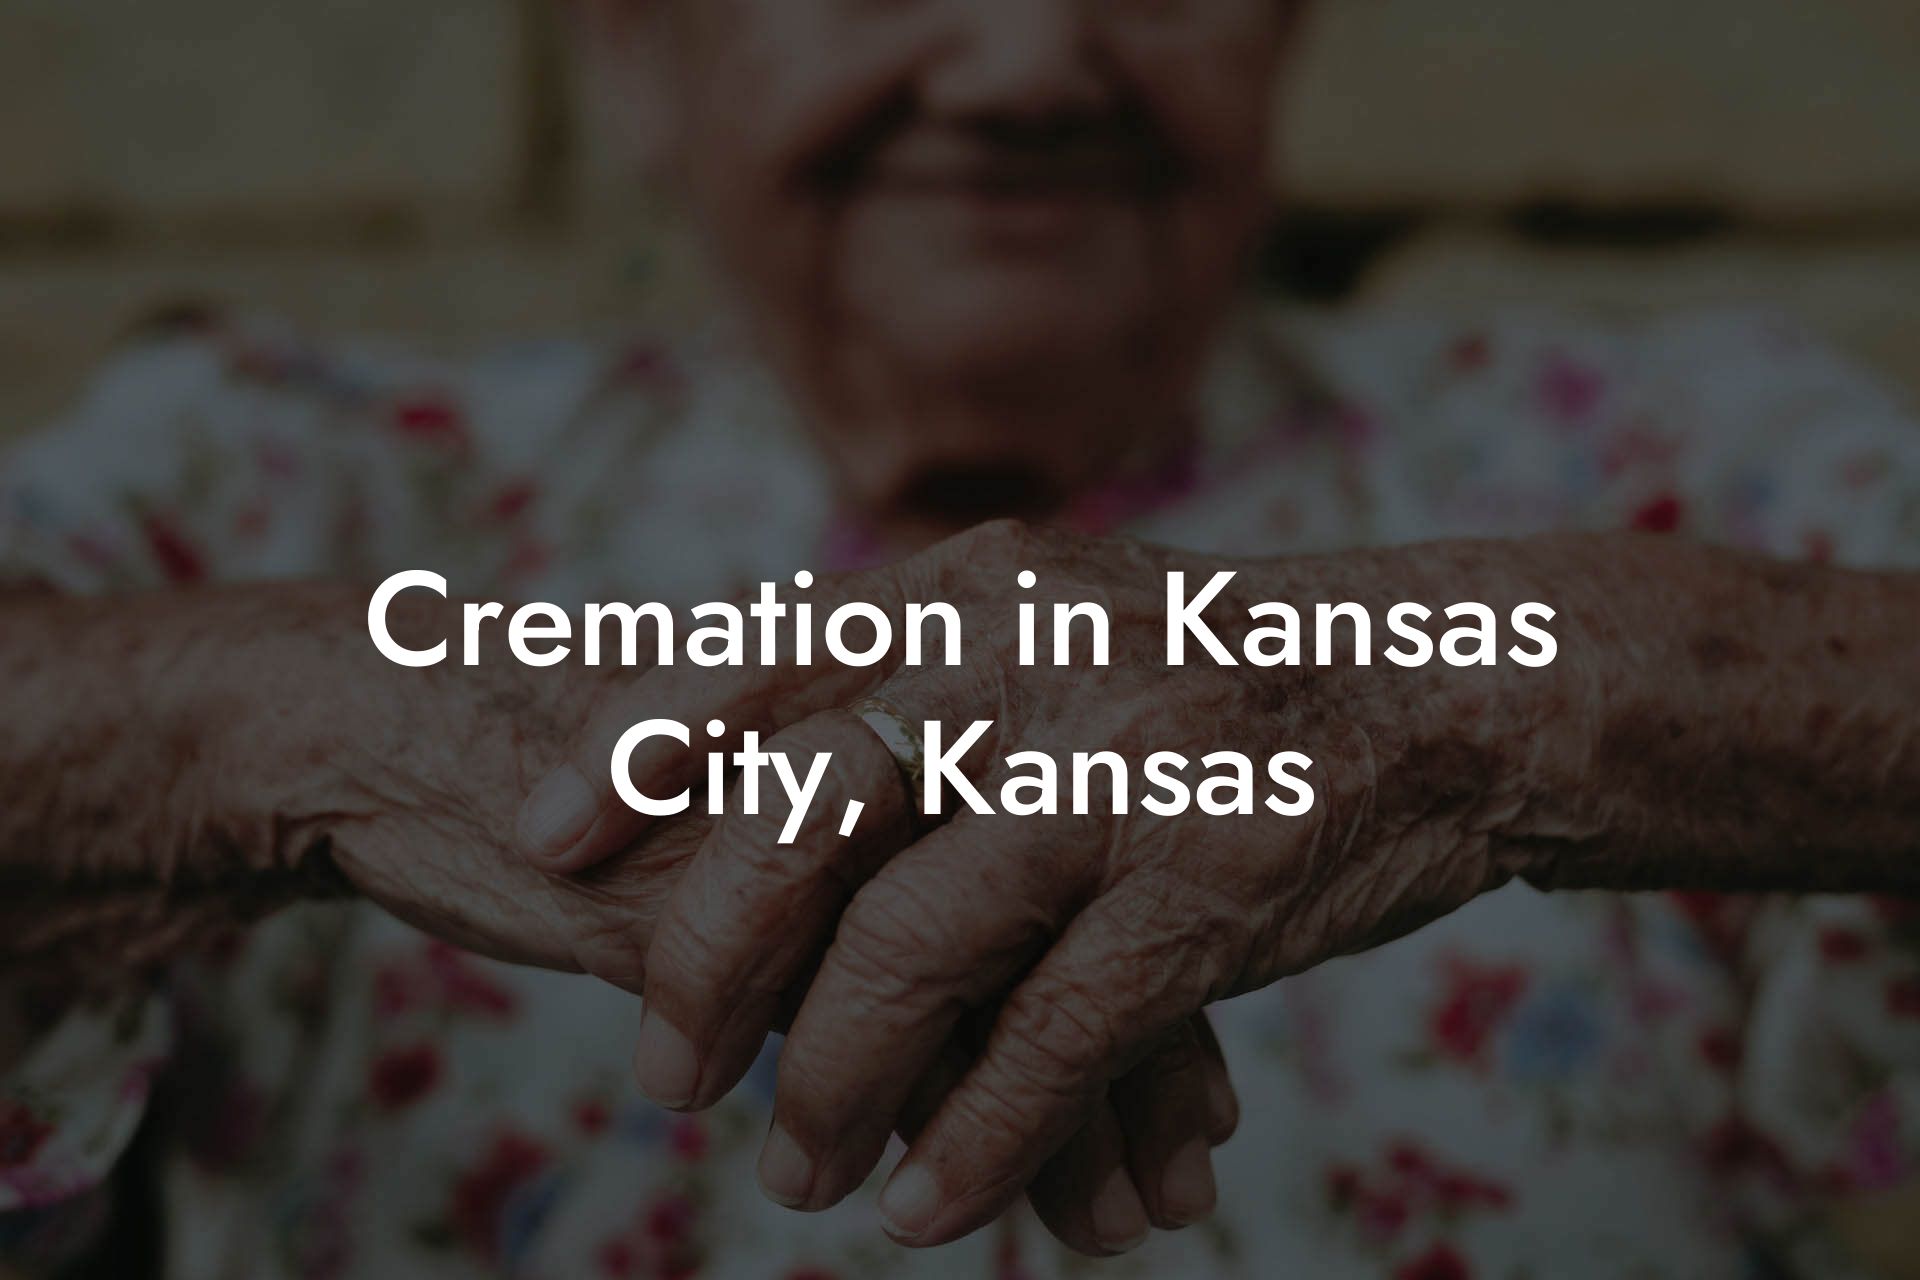 Cremation in Kansas City, Kansas